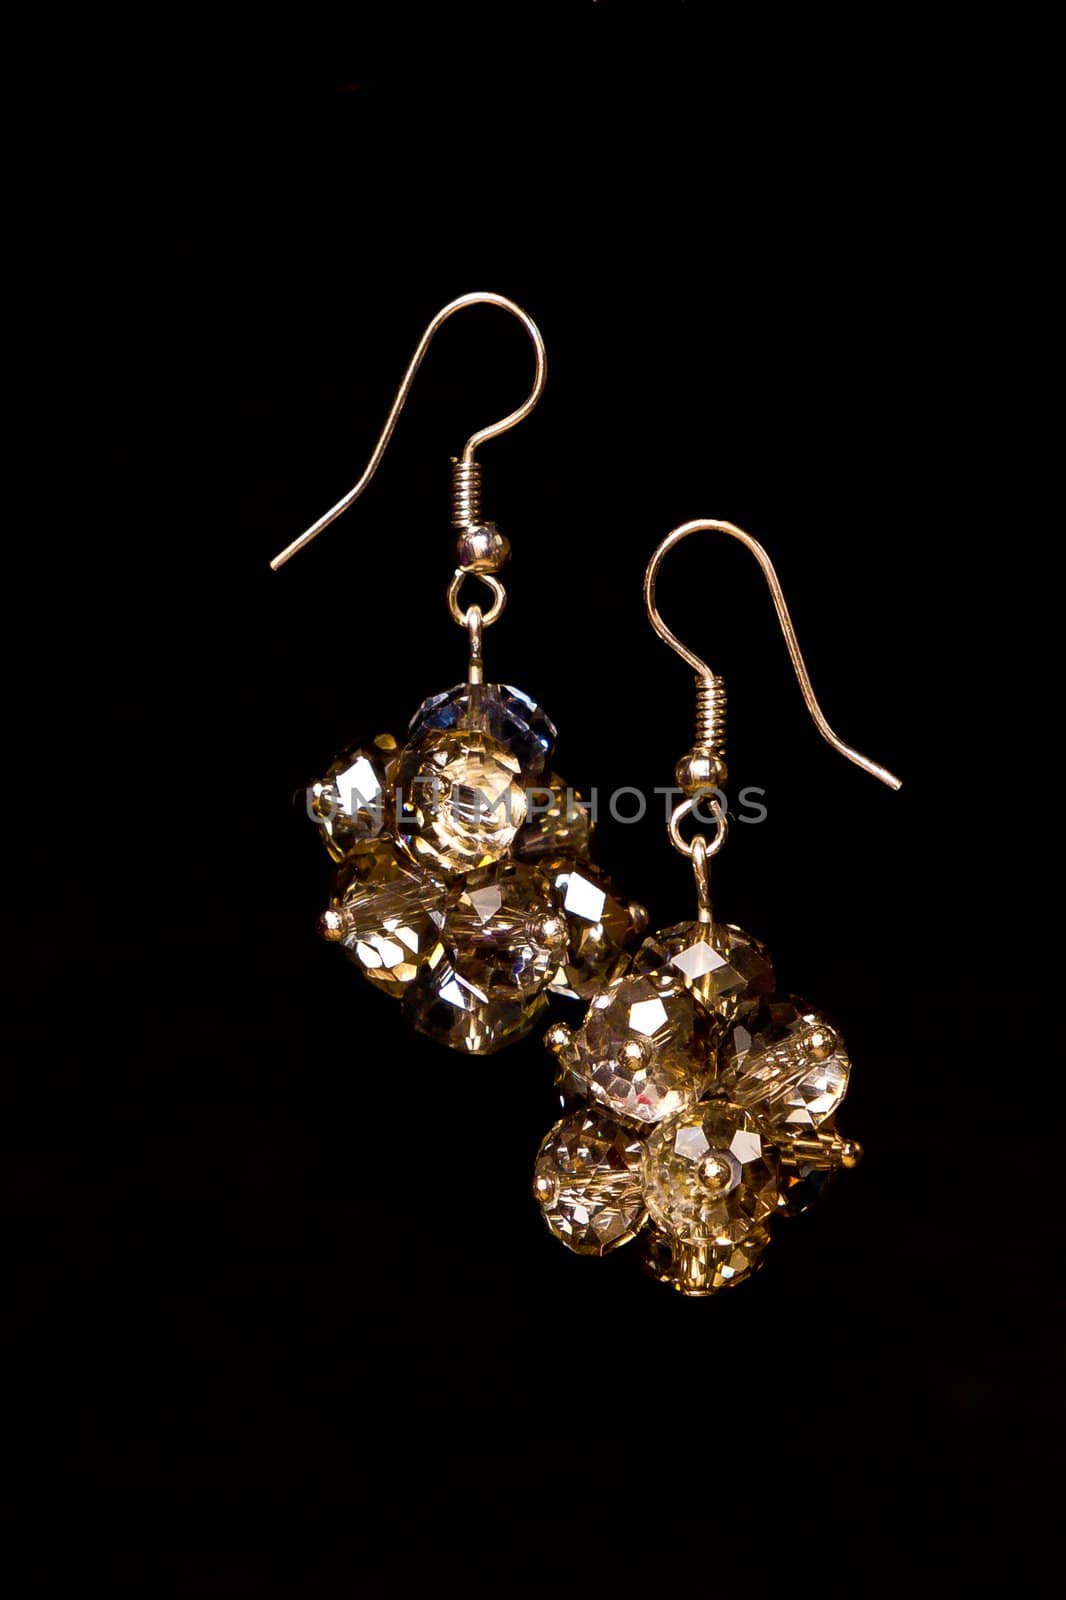 Shining earrings by AlehElly